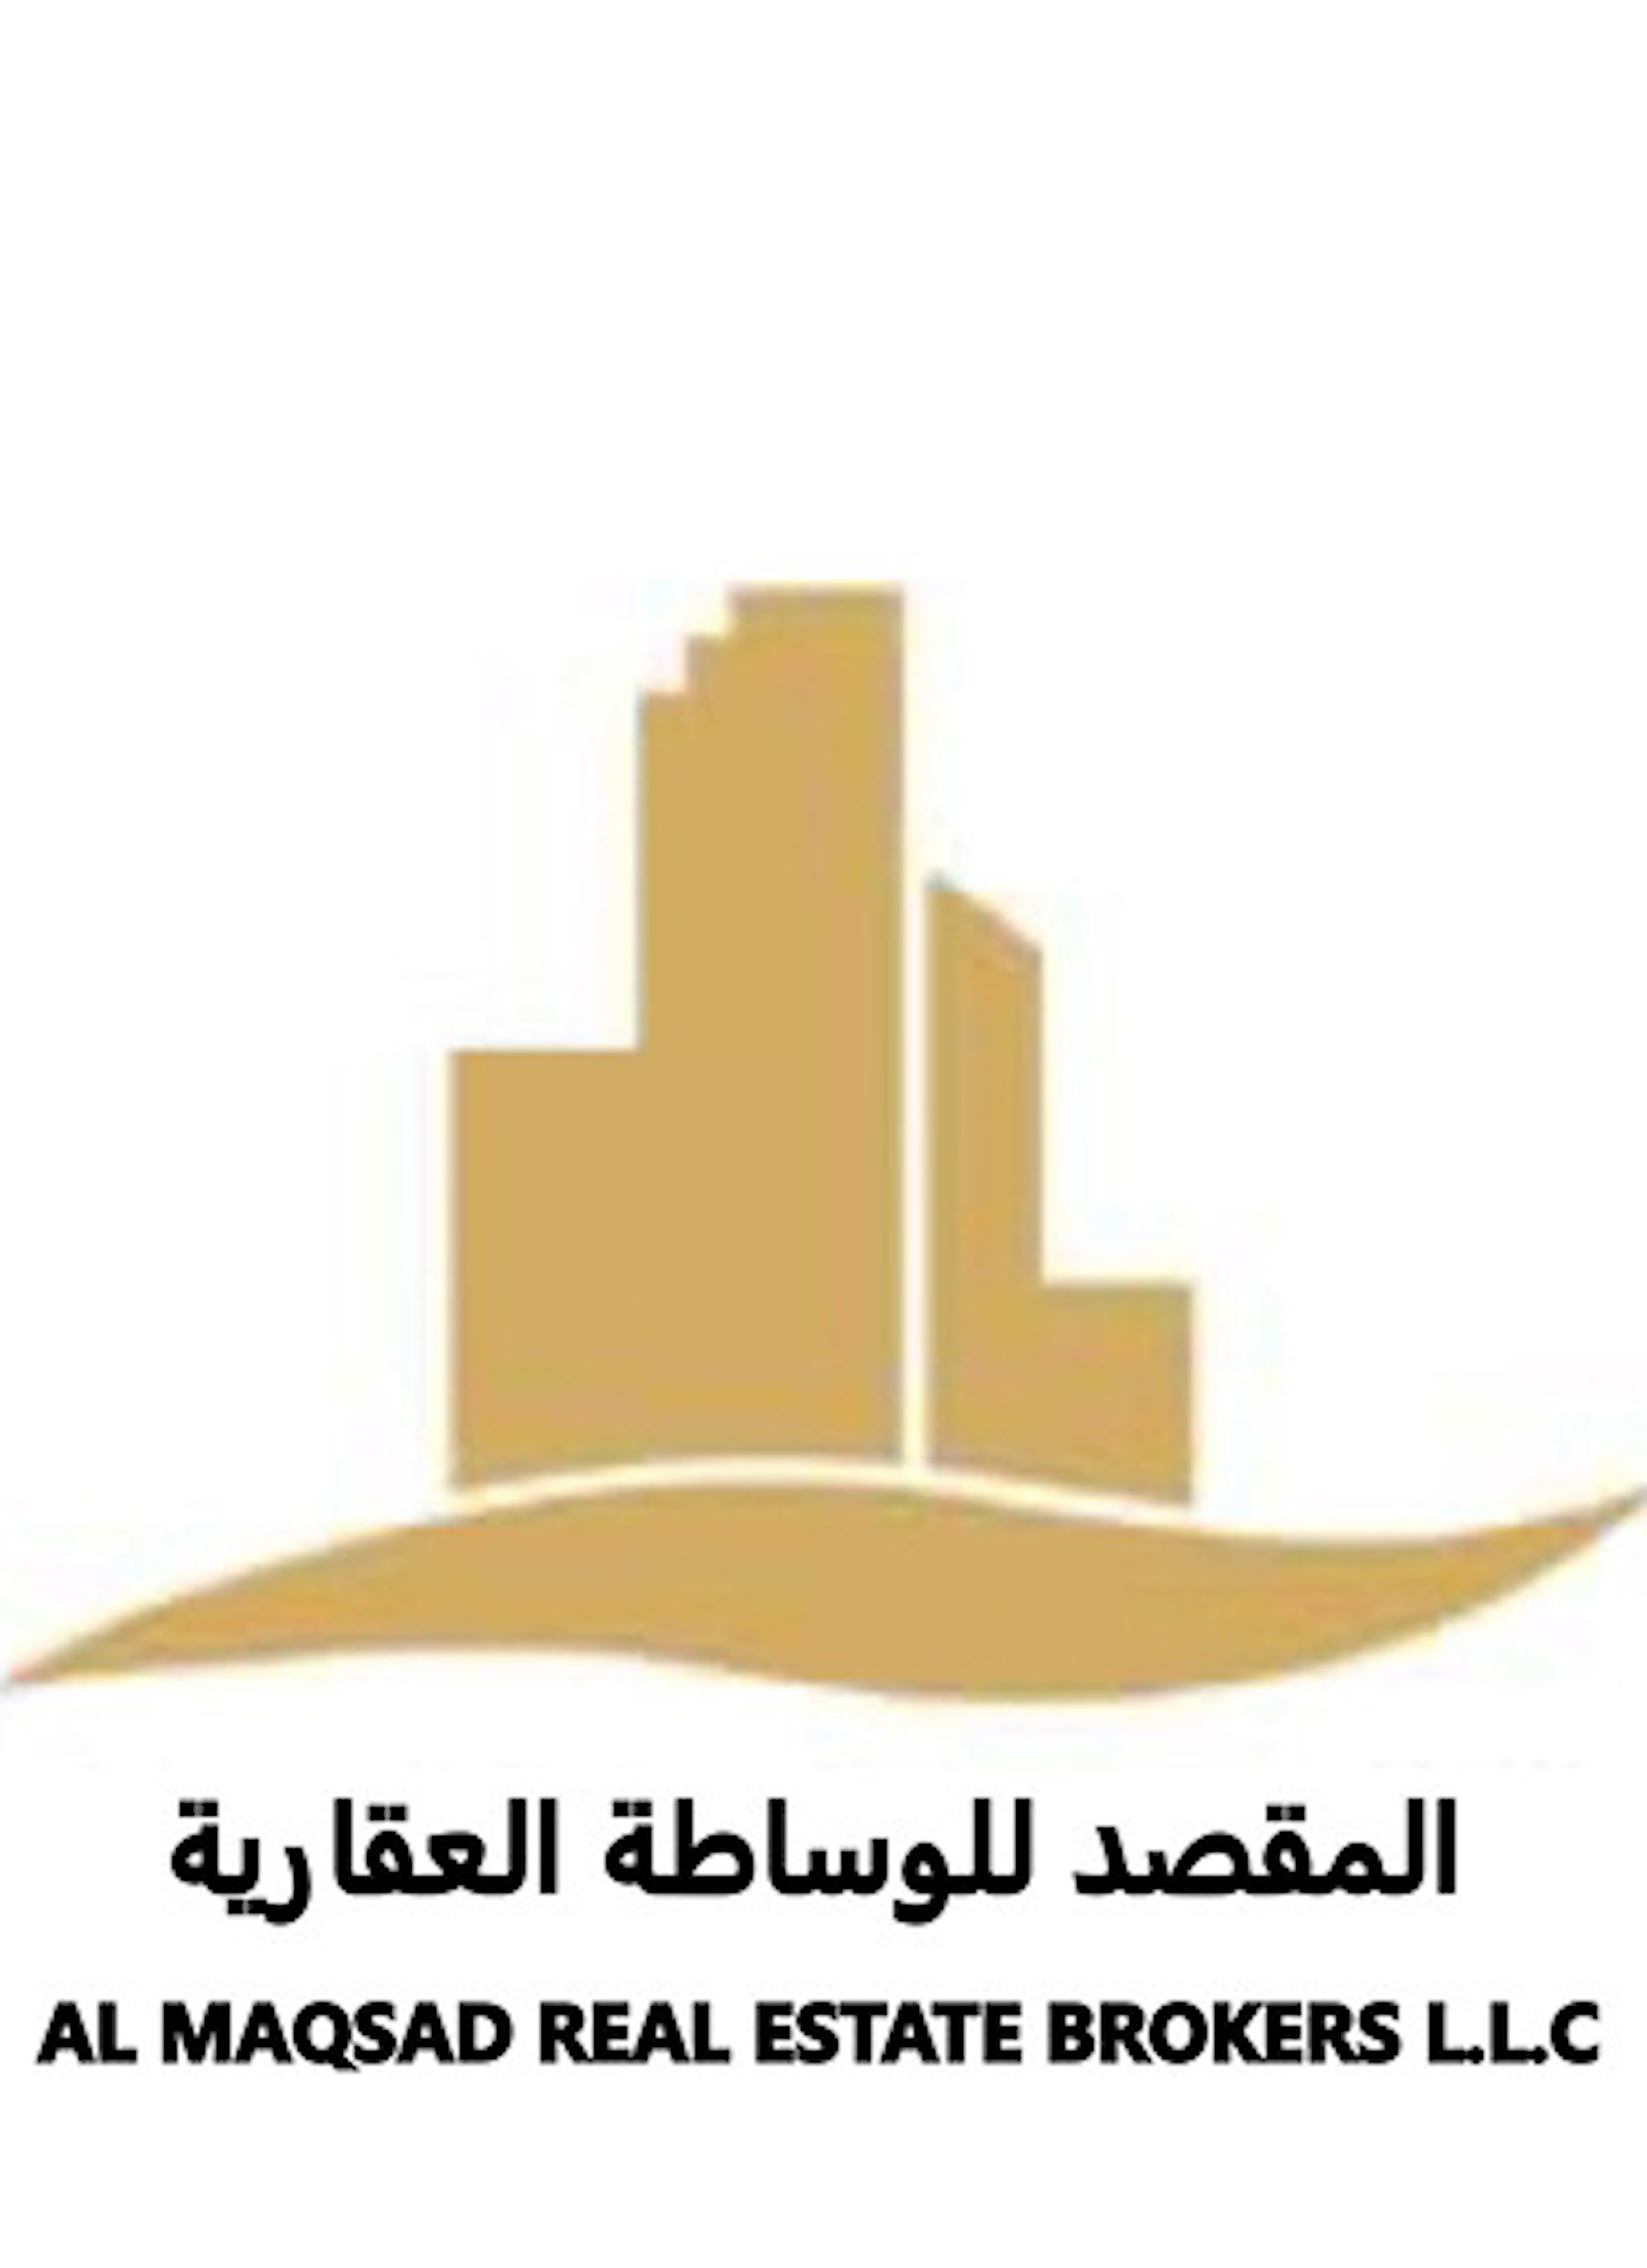 Al Maqsad Real Estate